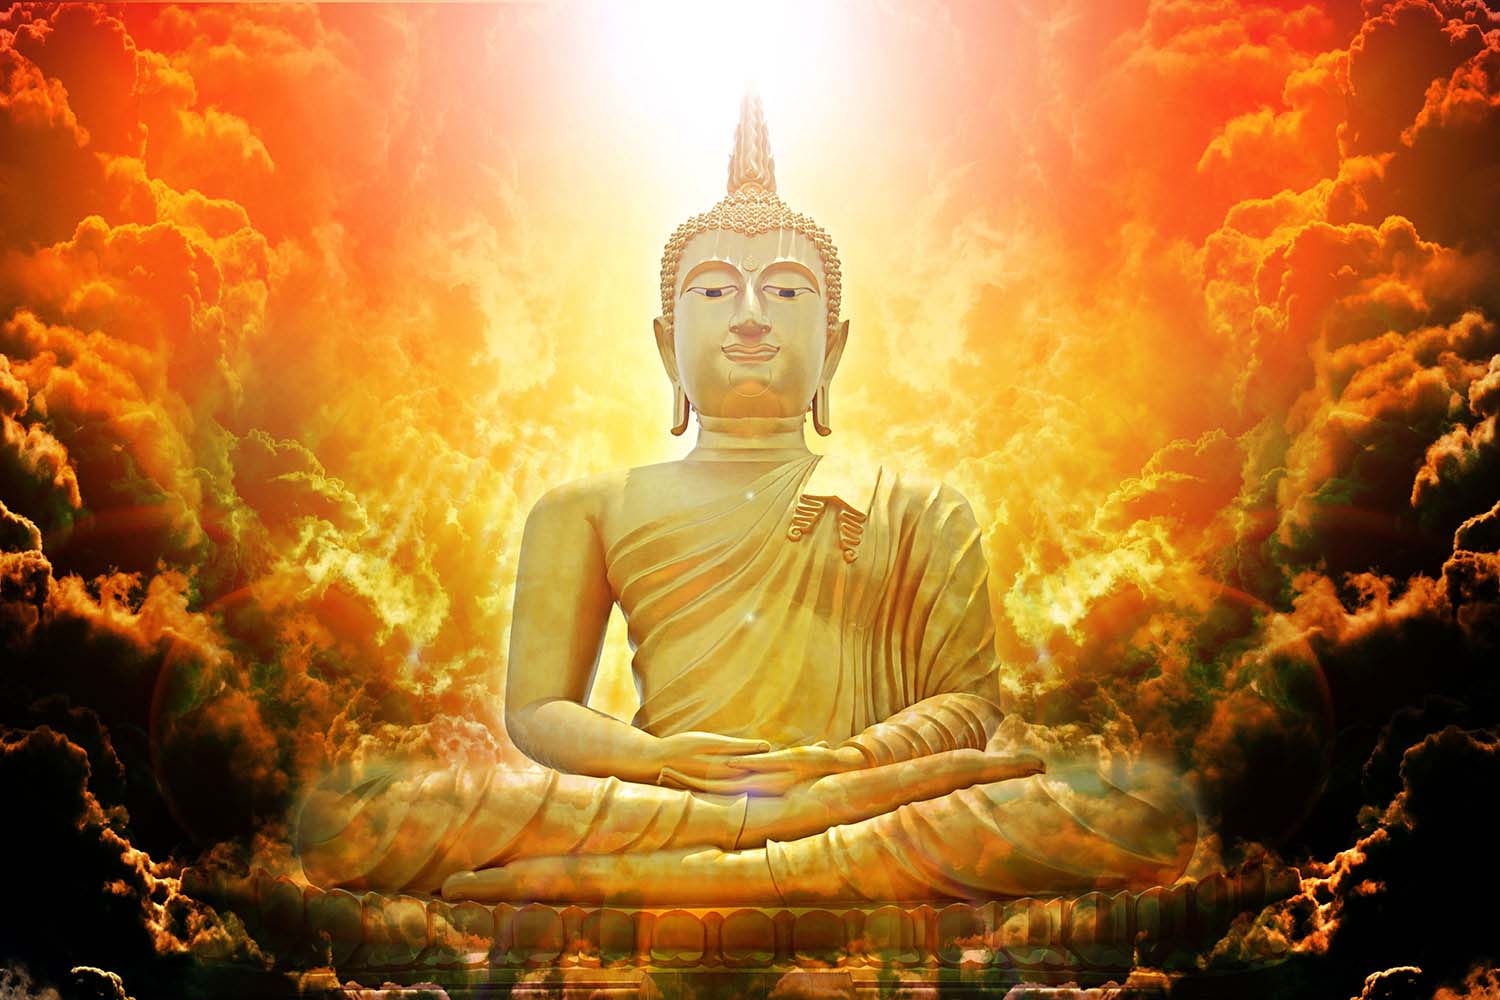 Ngũ Uẩn - khái niệm tâm linh đặc trưng trong Phật giáo. Thông qua những hình ảnh sinh động, bạn sẽ được khám phá sâu sắc về những tầng lớp ý nghĩa và tông sư của Ngũ Uẩn.